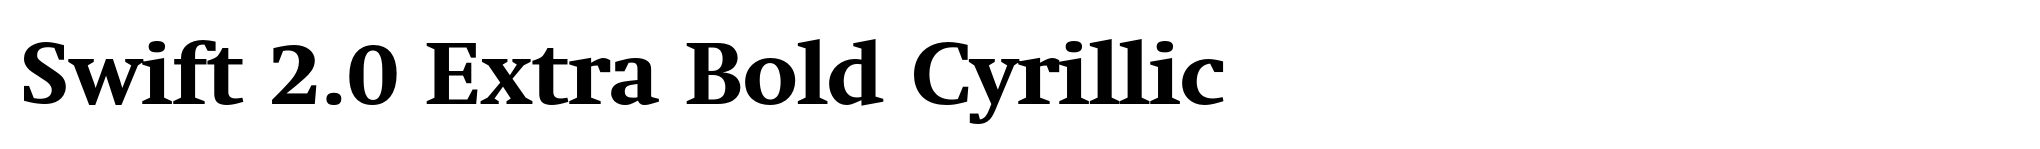 Swift 2.0 Extra Bold Cyrillic image